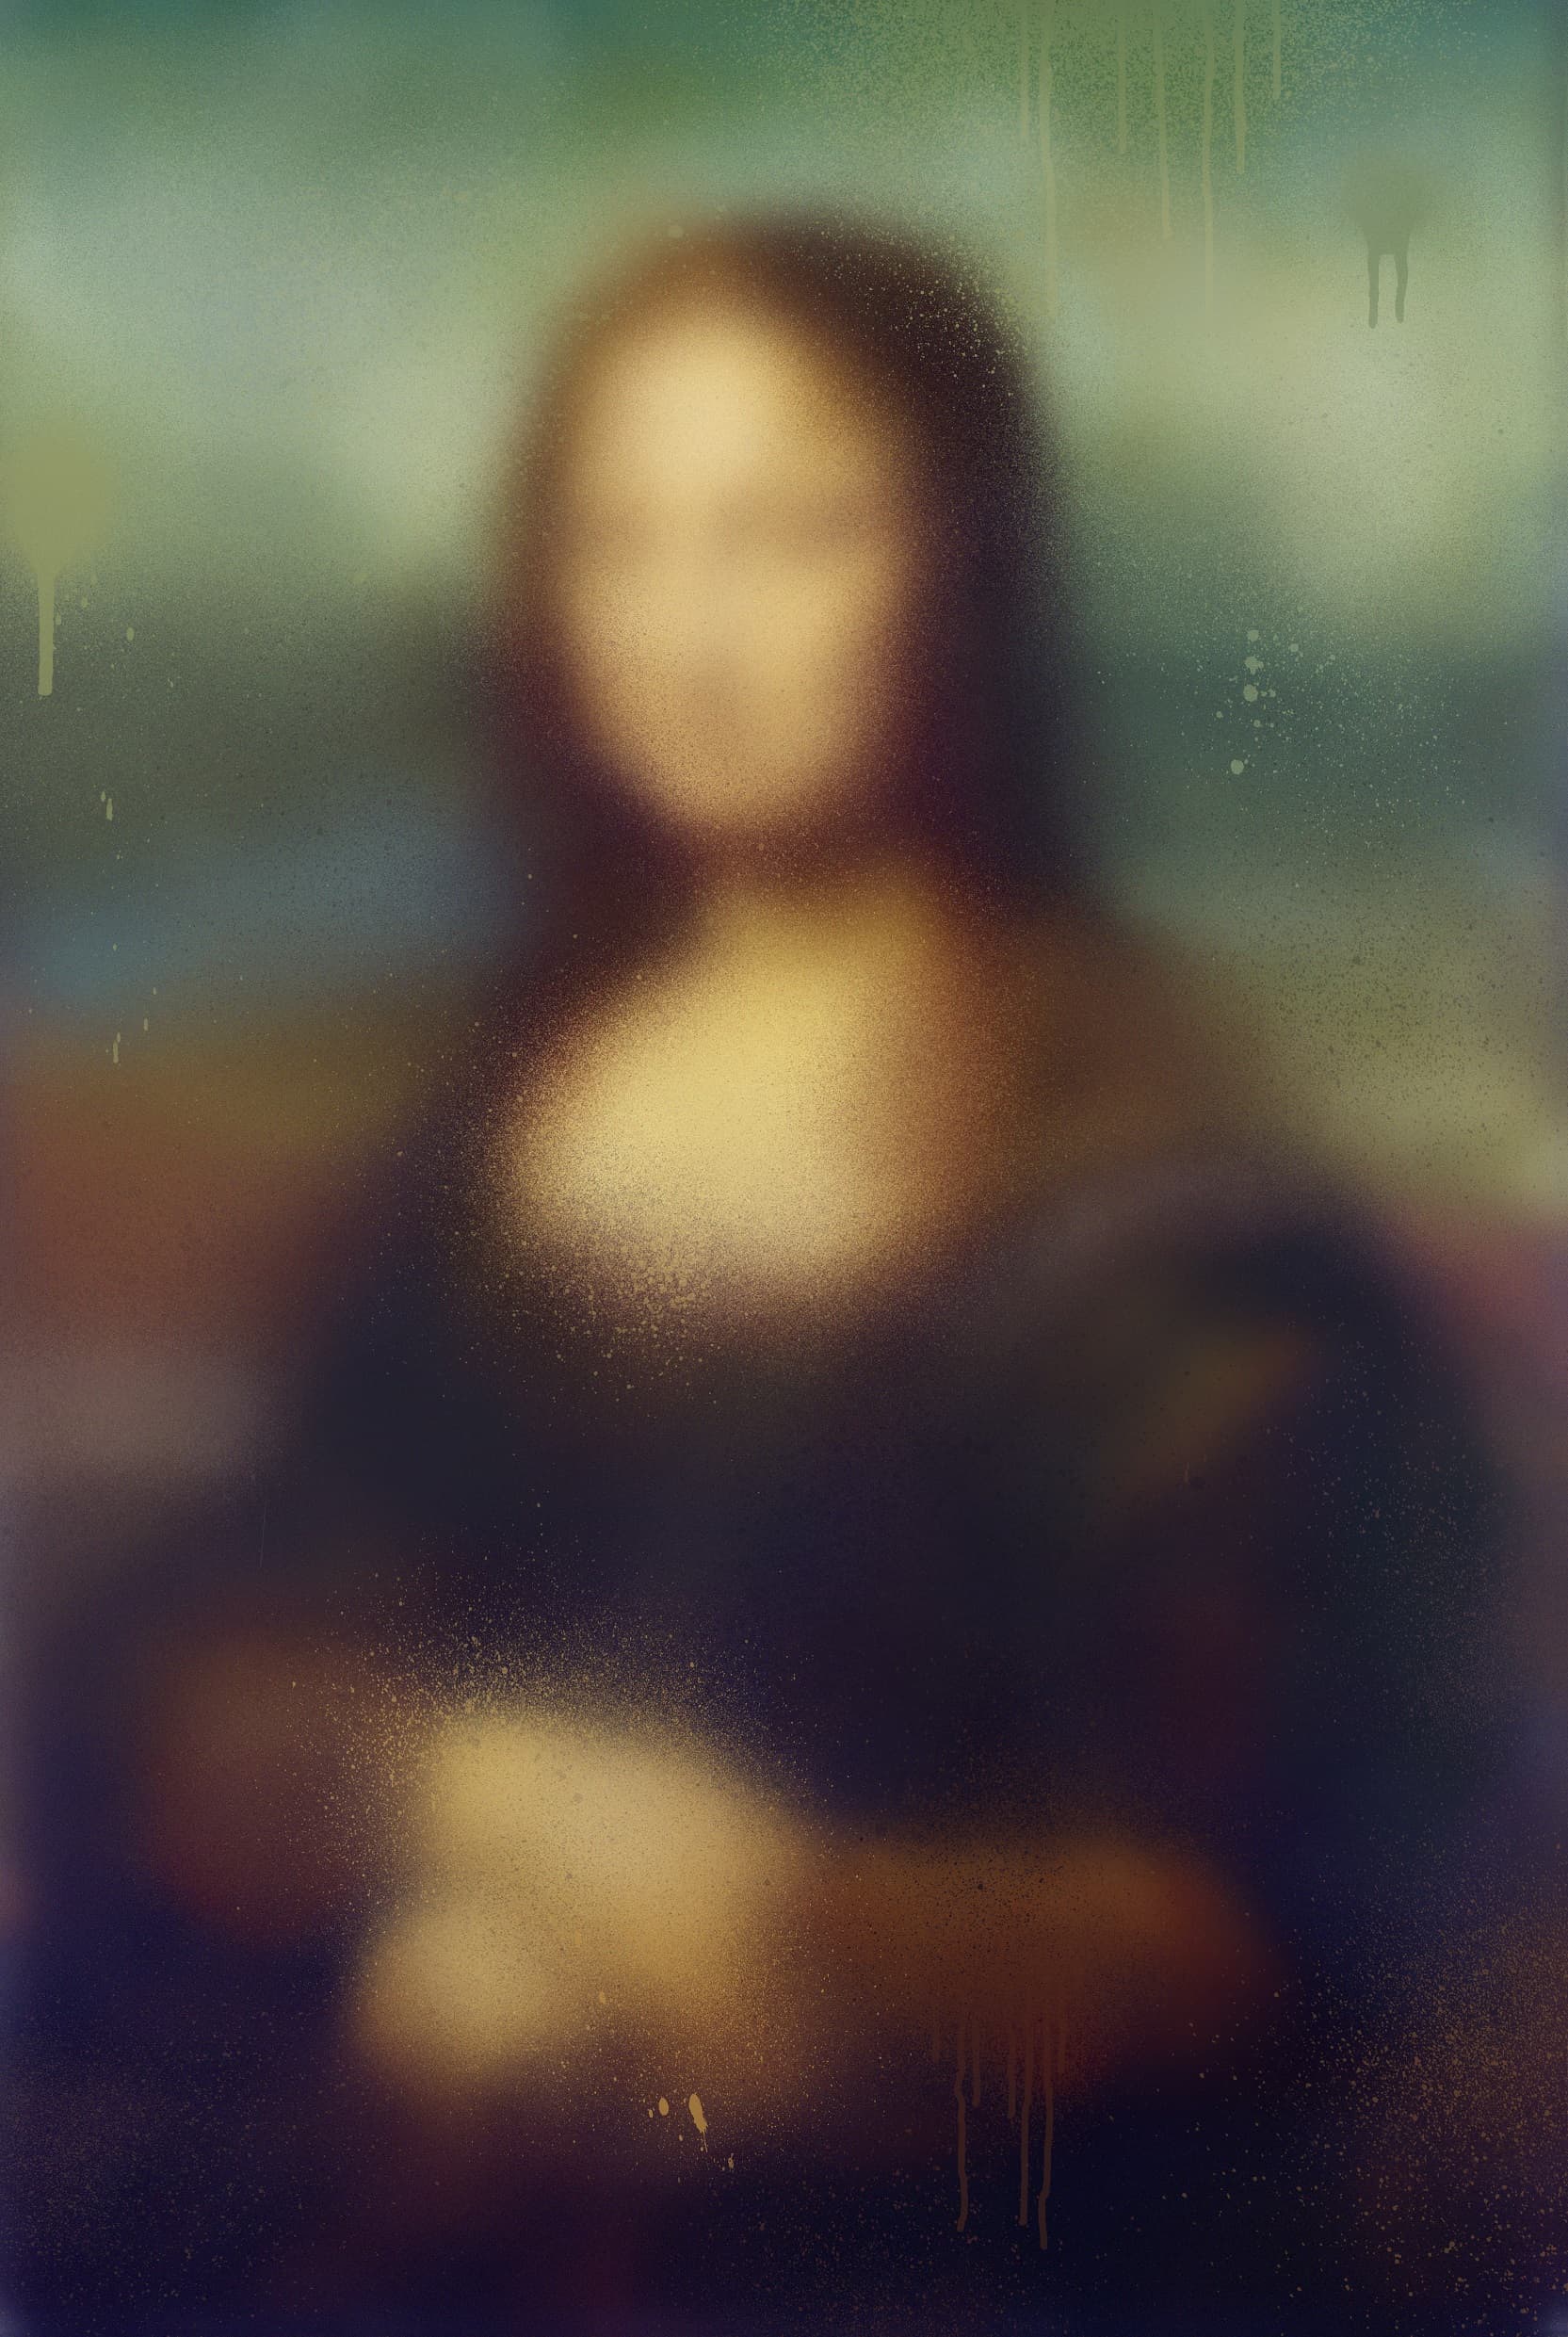 Miaz Brothers, Mona Lisa - Hand Finished Print , 2021